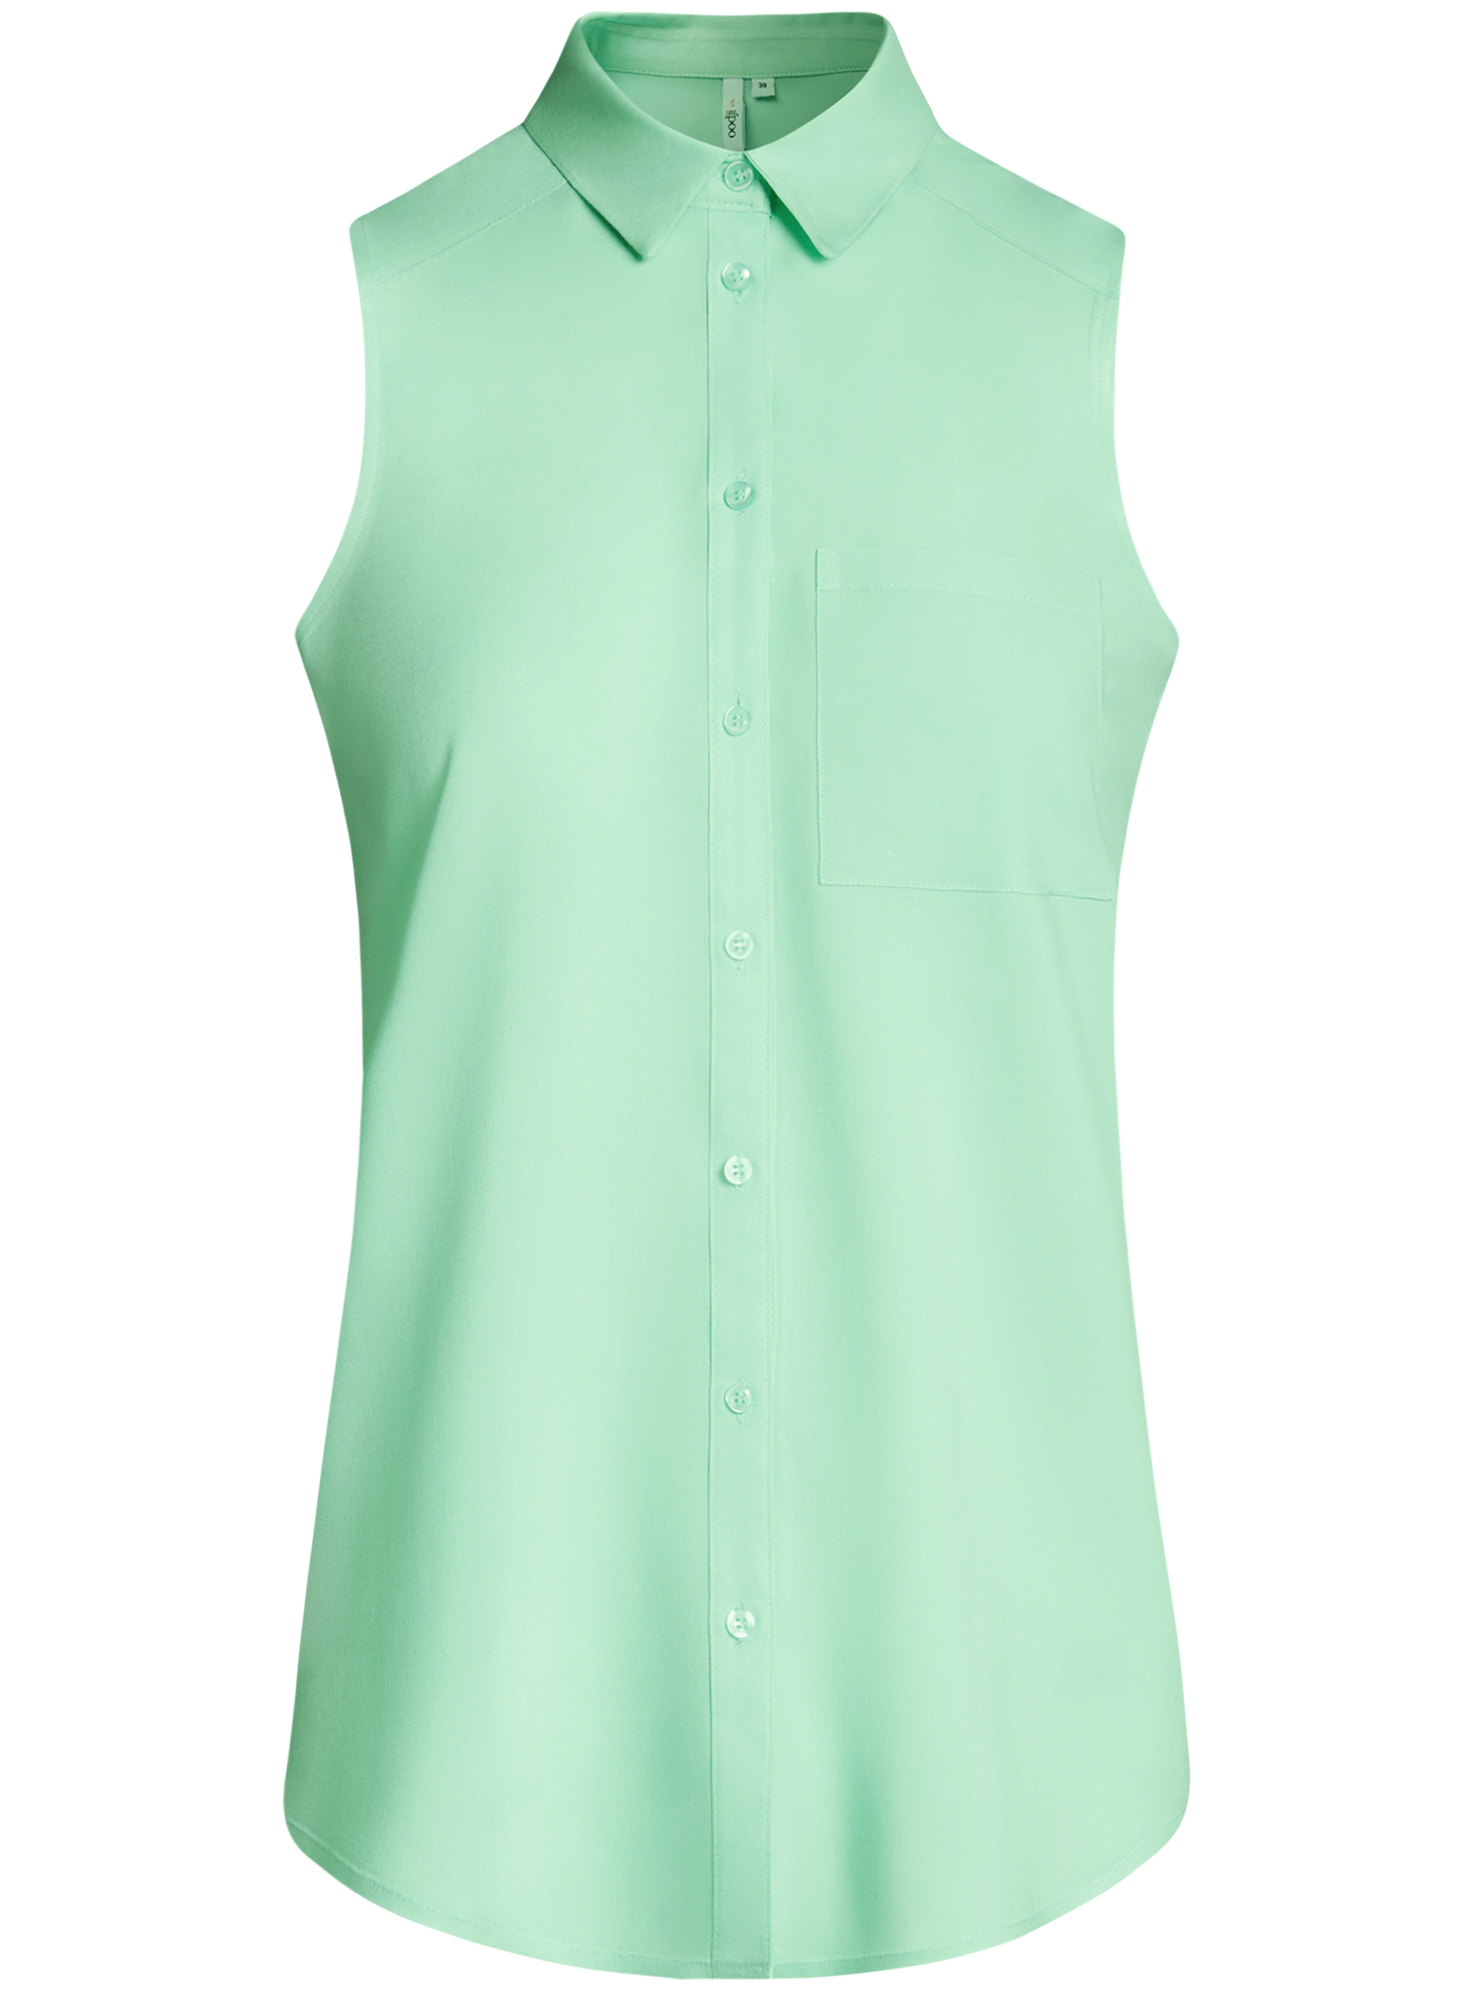 Блузка женская без рукавов. Блузка без рукавов. Зеленая блузка. Блуза без рукавов. Светло зеленая блузка.